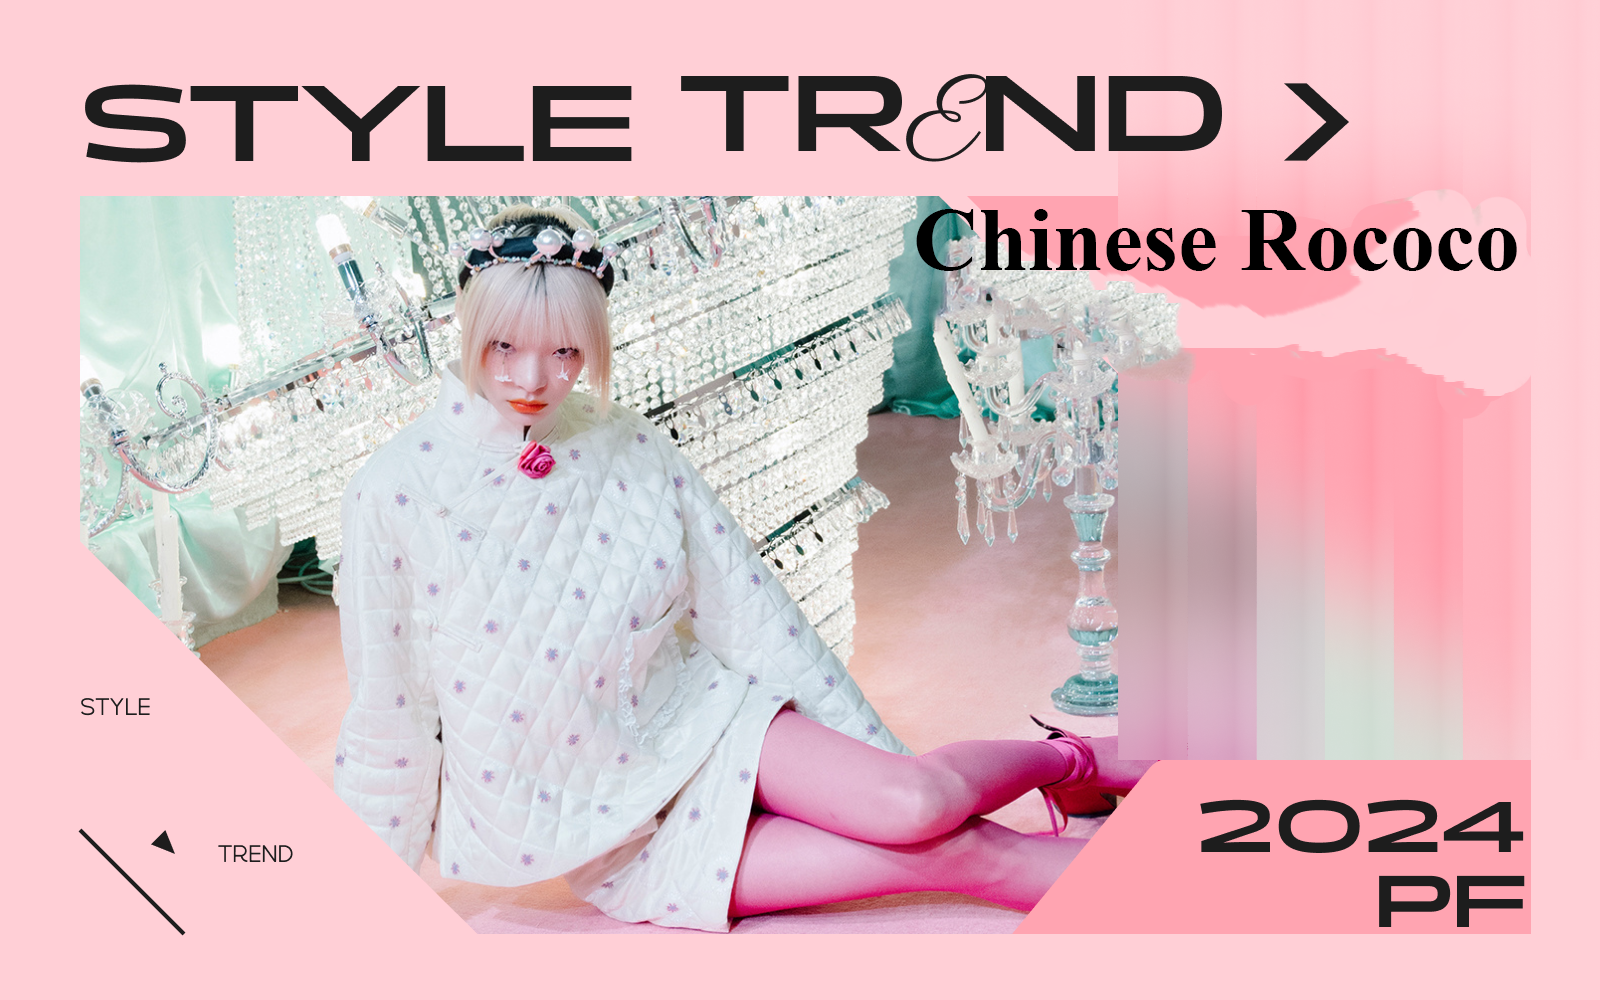 Chinese Rococo -- The Design Development of E-Commerce Womenswear